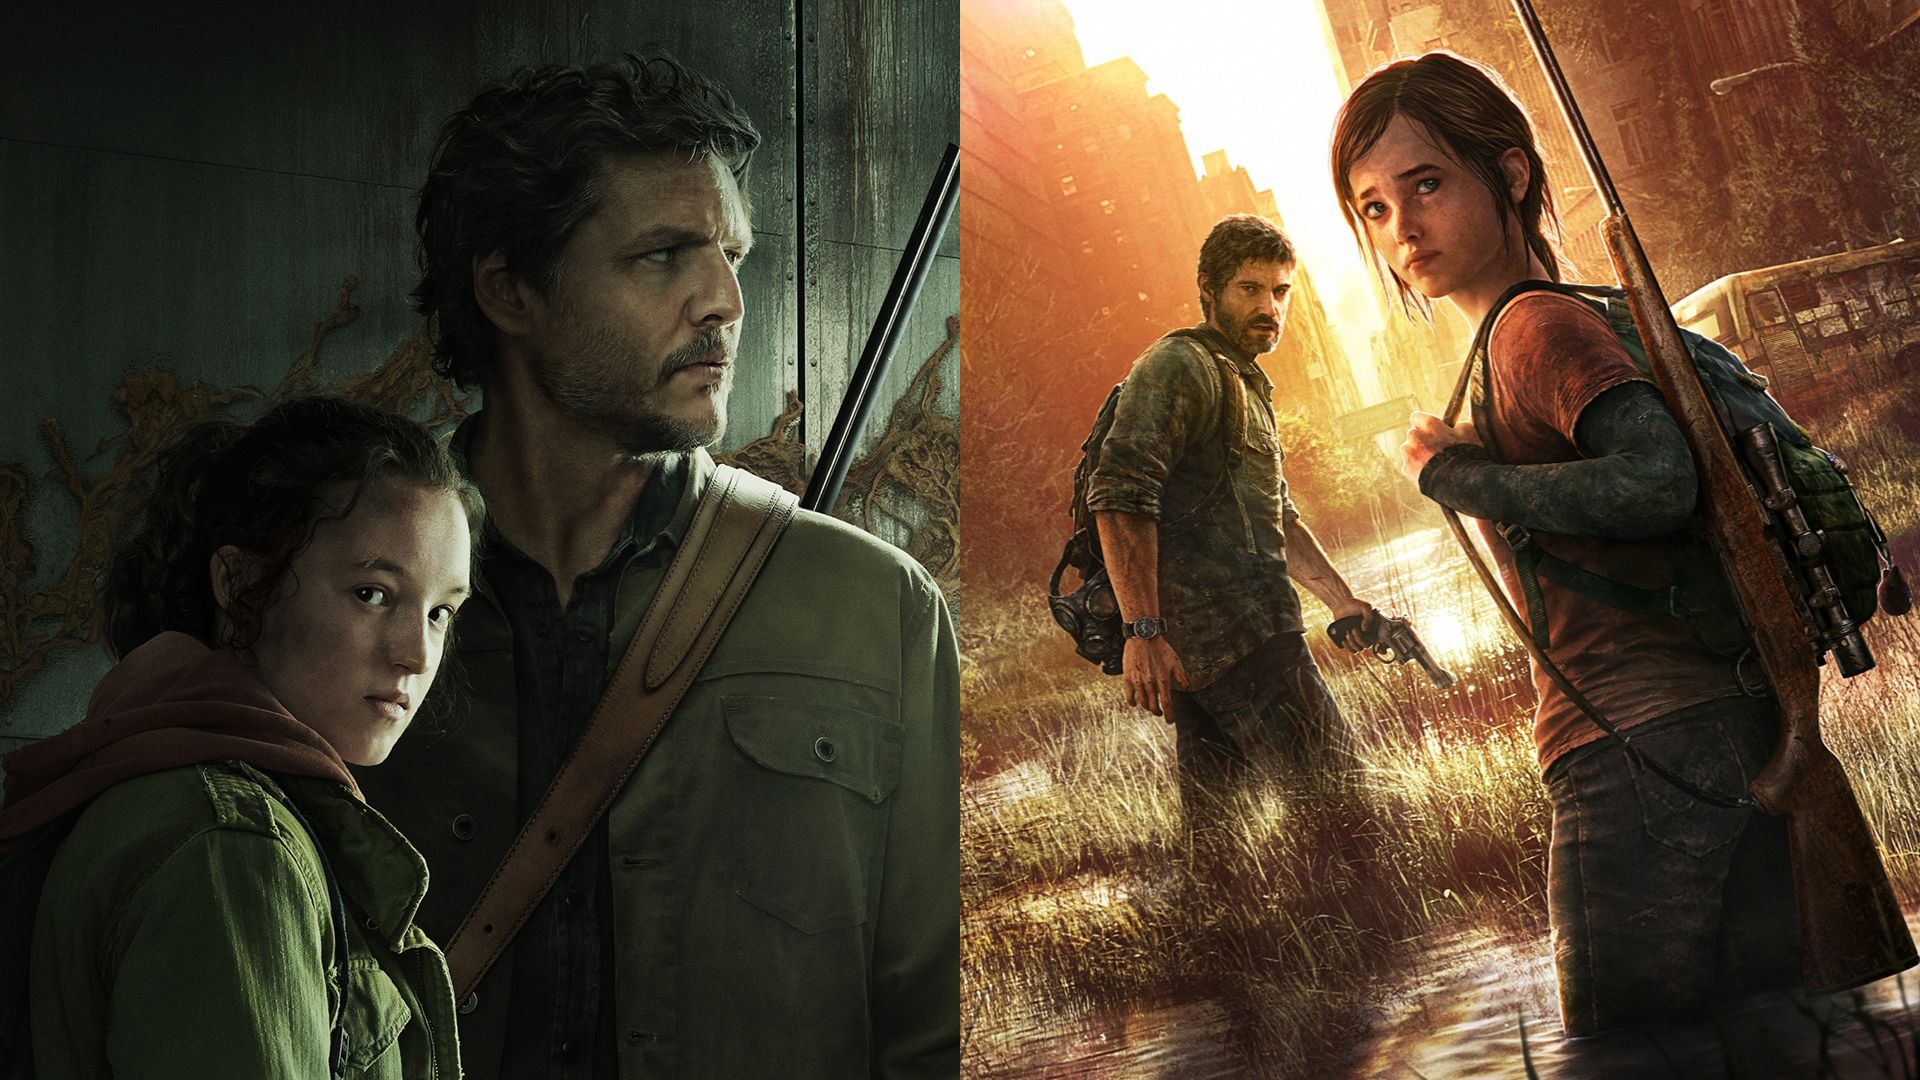 The Last of Us: Série terá diferenças em relação ao jogo